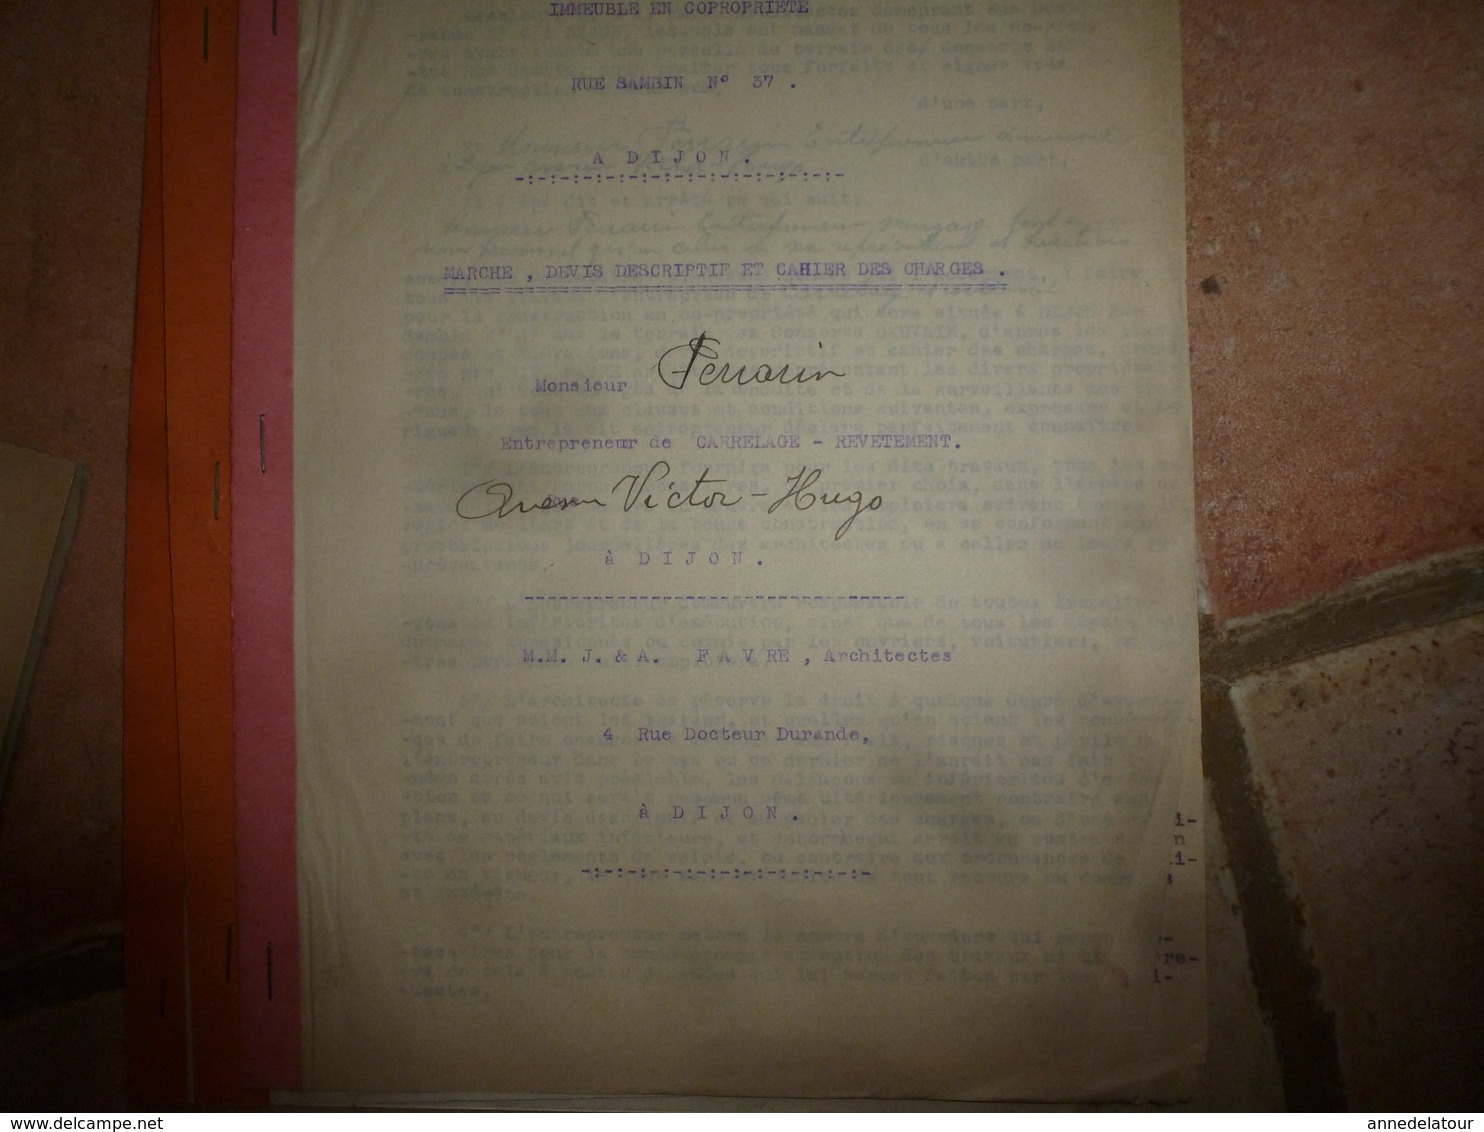 1933 Lot de documents contractuels de divers Corps d'Etats pour construction d'une Co-Pro 33 rue Sambin à Dijon ;etc